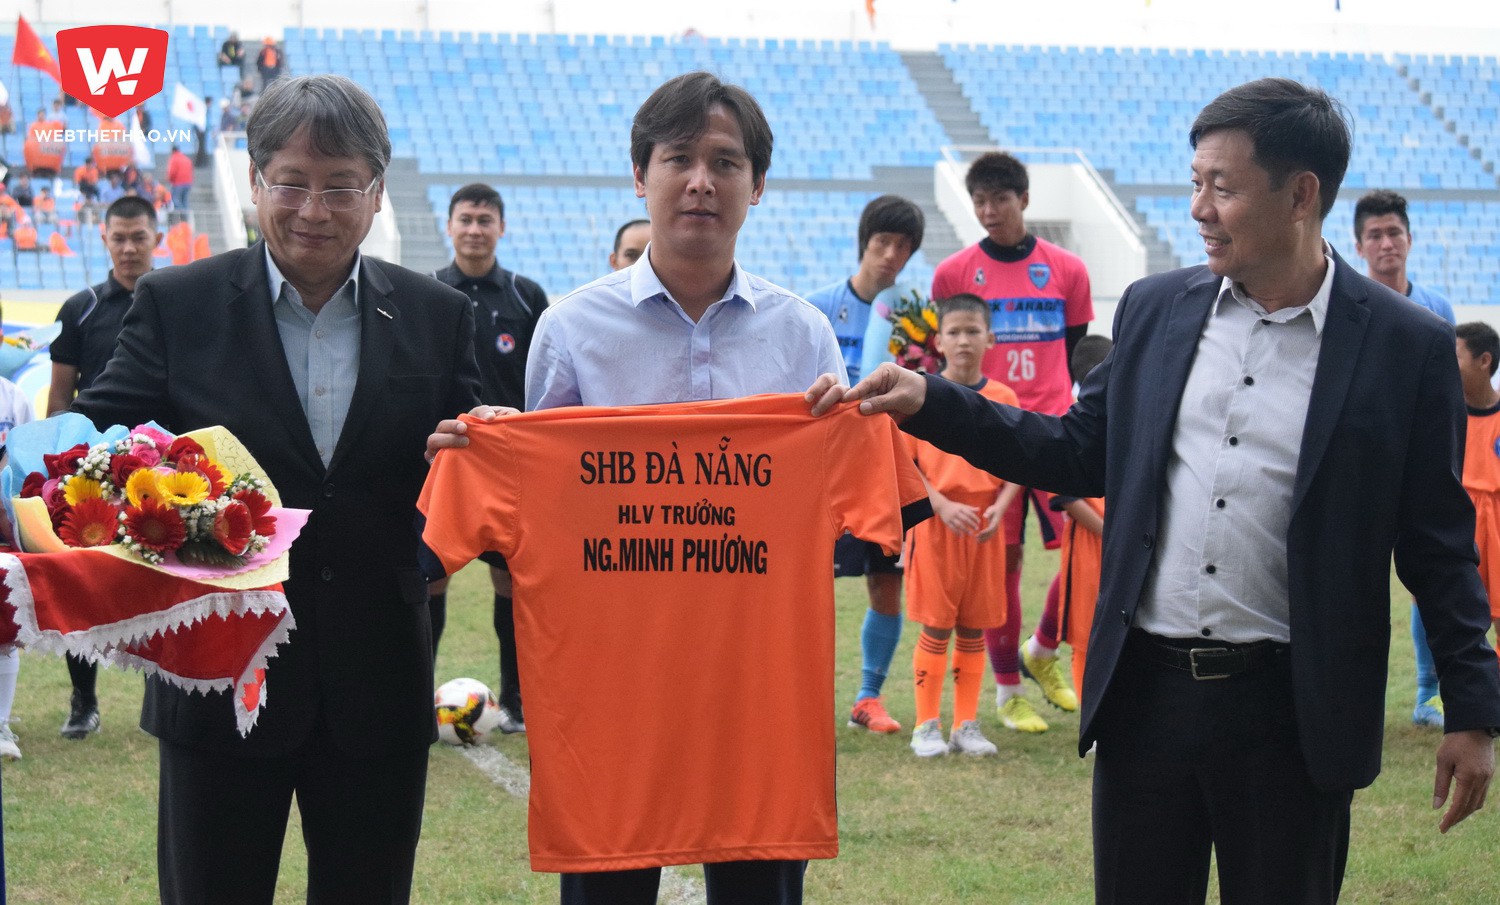 Cựu HLV trưởng Long An chính thức nhận chiếc áo từ lãnh đạo địa phương và lãnh đạo đội bóng. Ảnh: Huy Kha